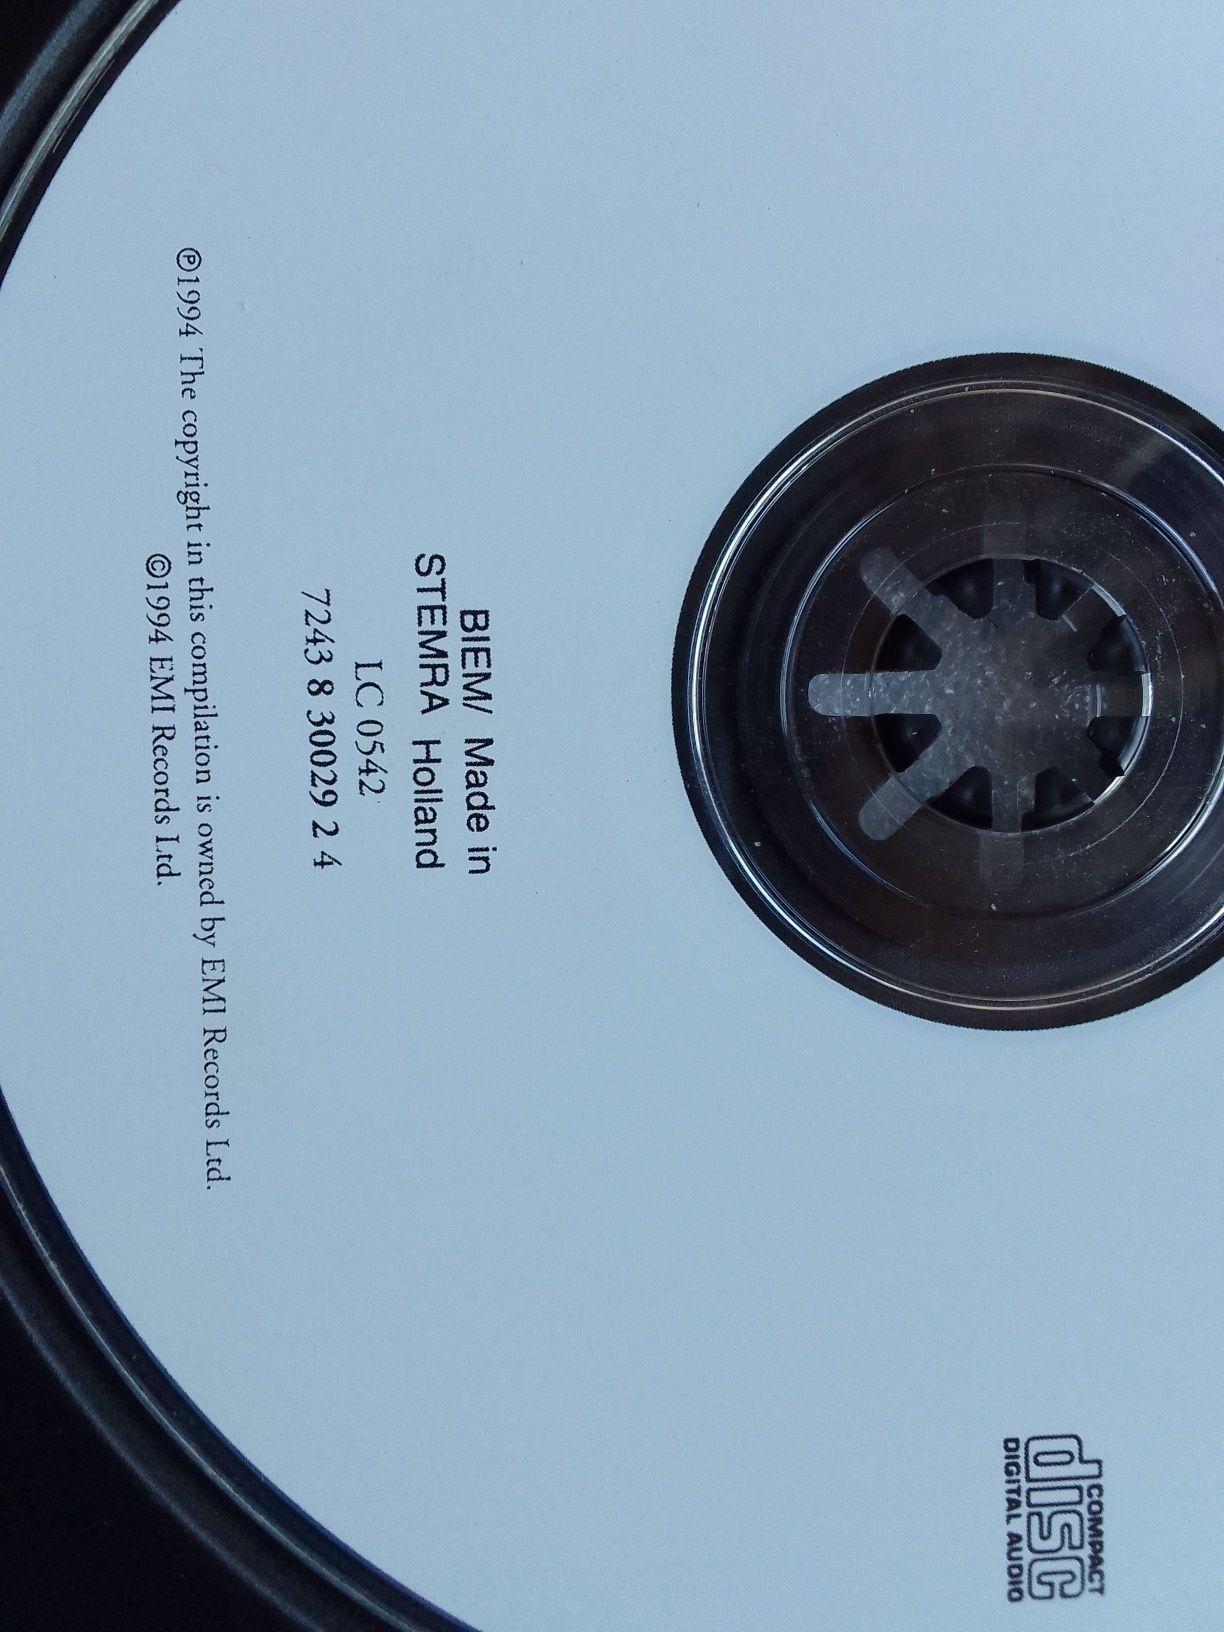 Whitesnake's Greatest Hits. CD Audio.